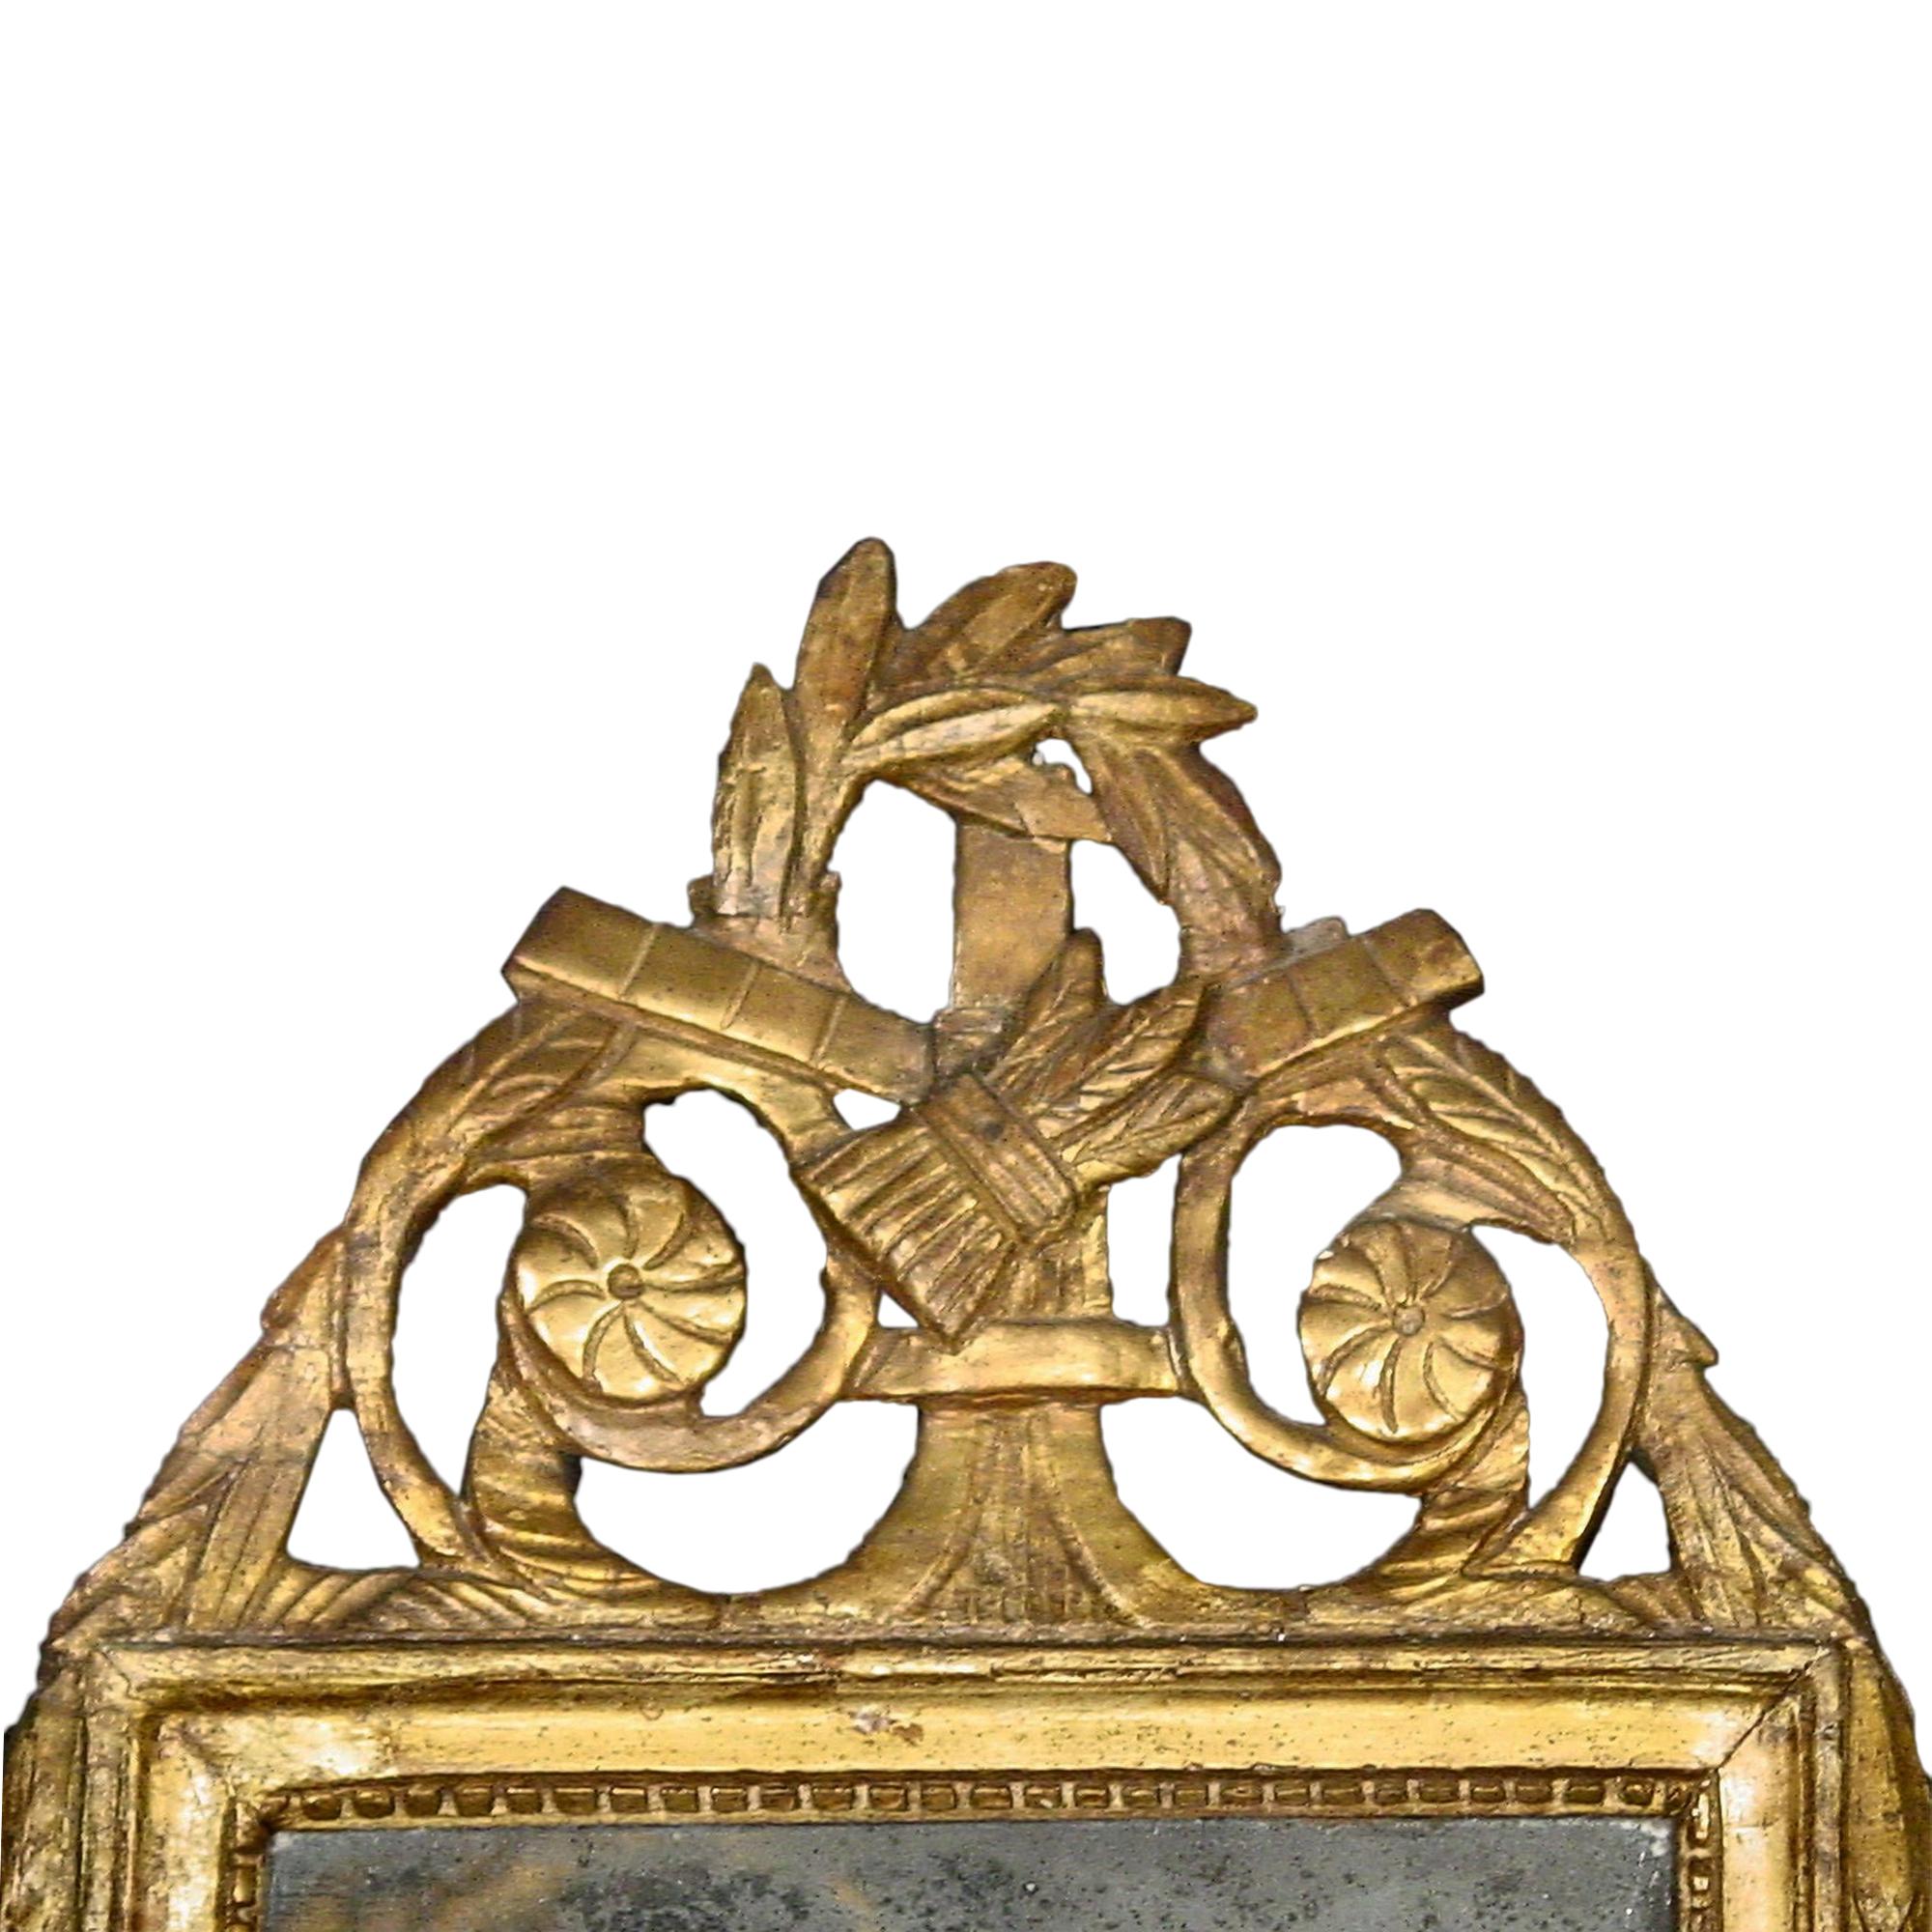 Un charmant miroir de campagne français du 18ème siècle d'époque Louis XVI patiné vert et doré. La partie supérieure présente de magnifiques sculptures dorées représentant du blé au milieu de couronnes de feuillage et d'outils agricoles. D'élégantes